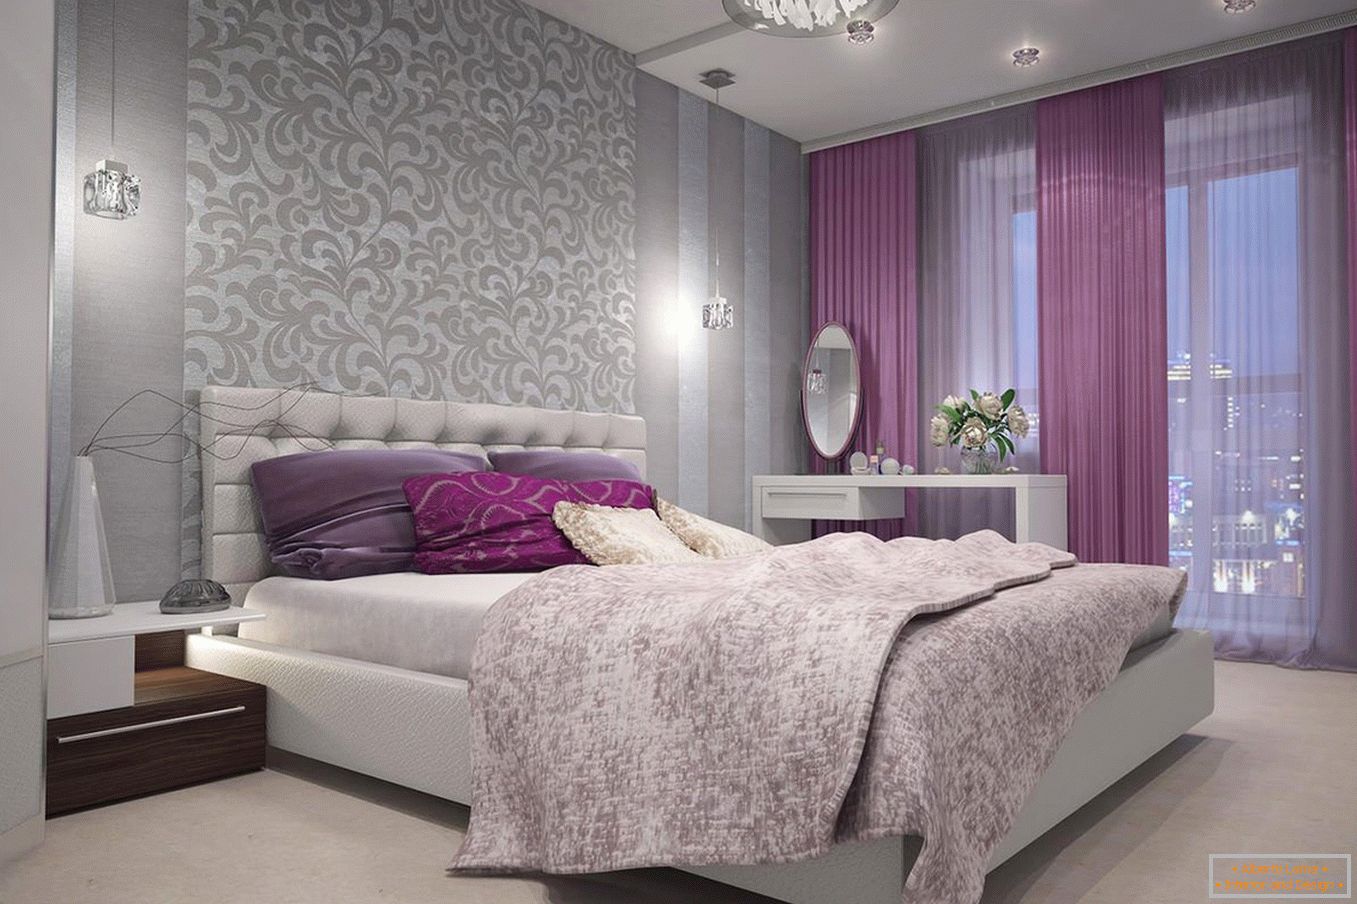 Cortinas violetas no quarto